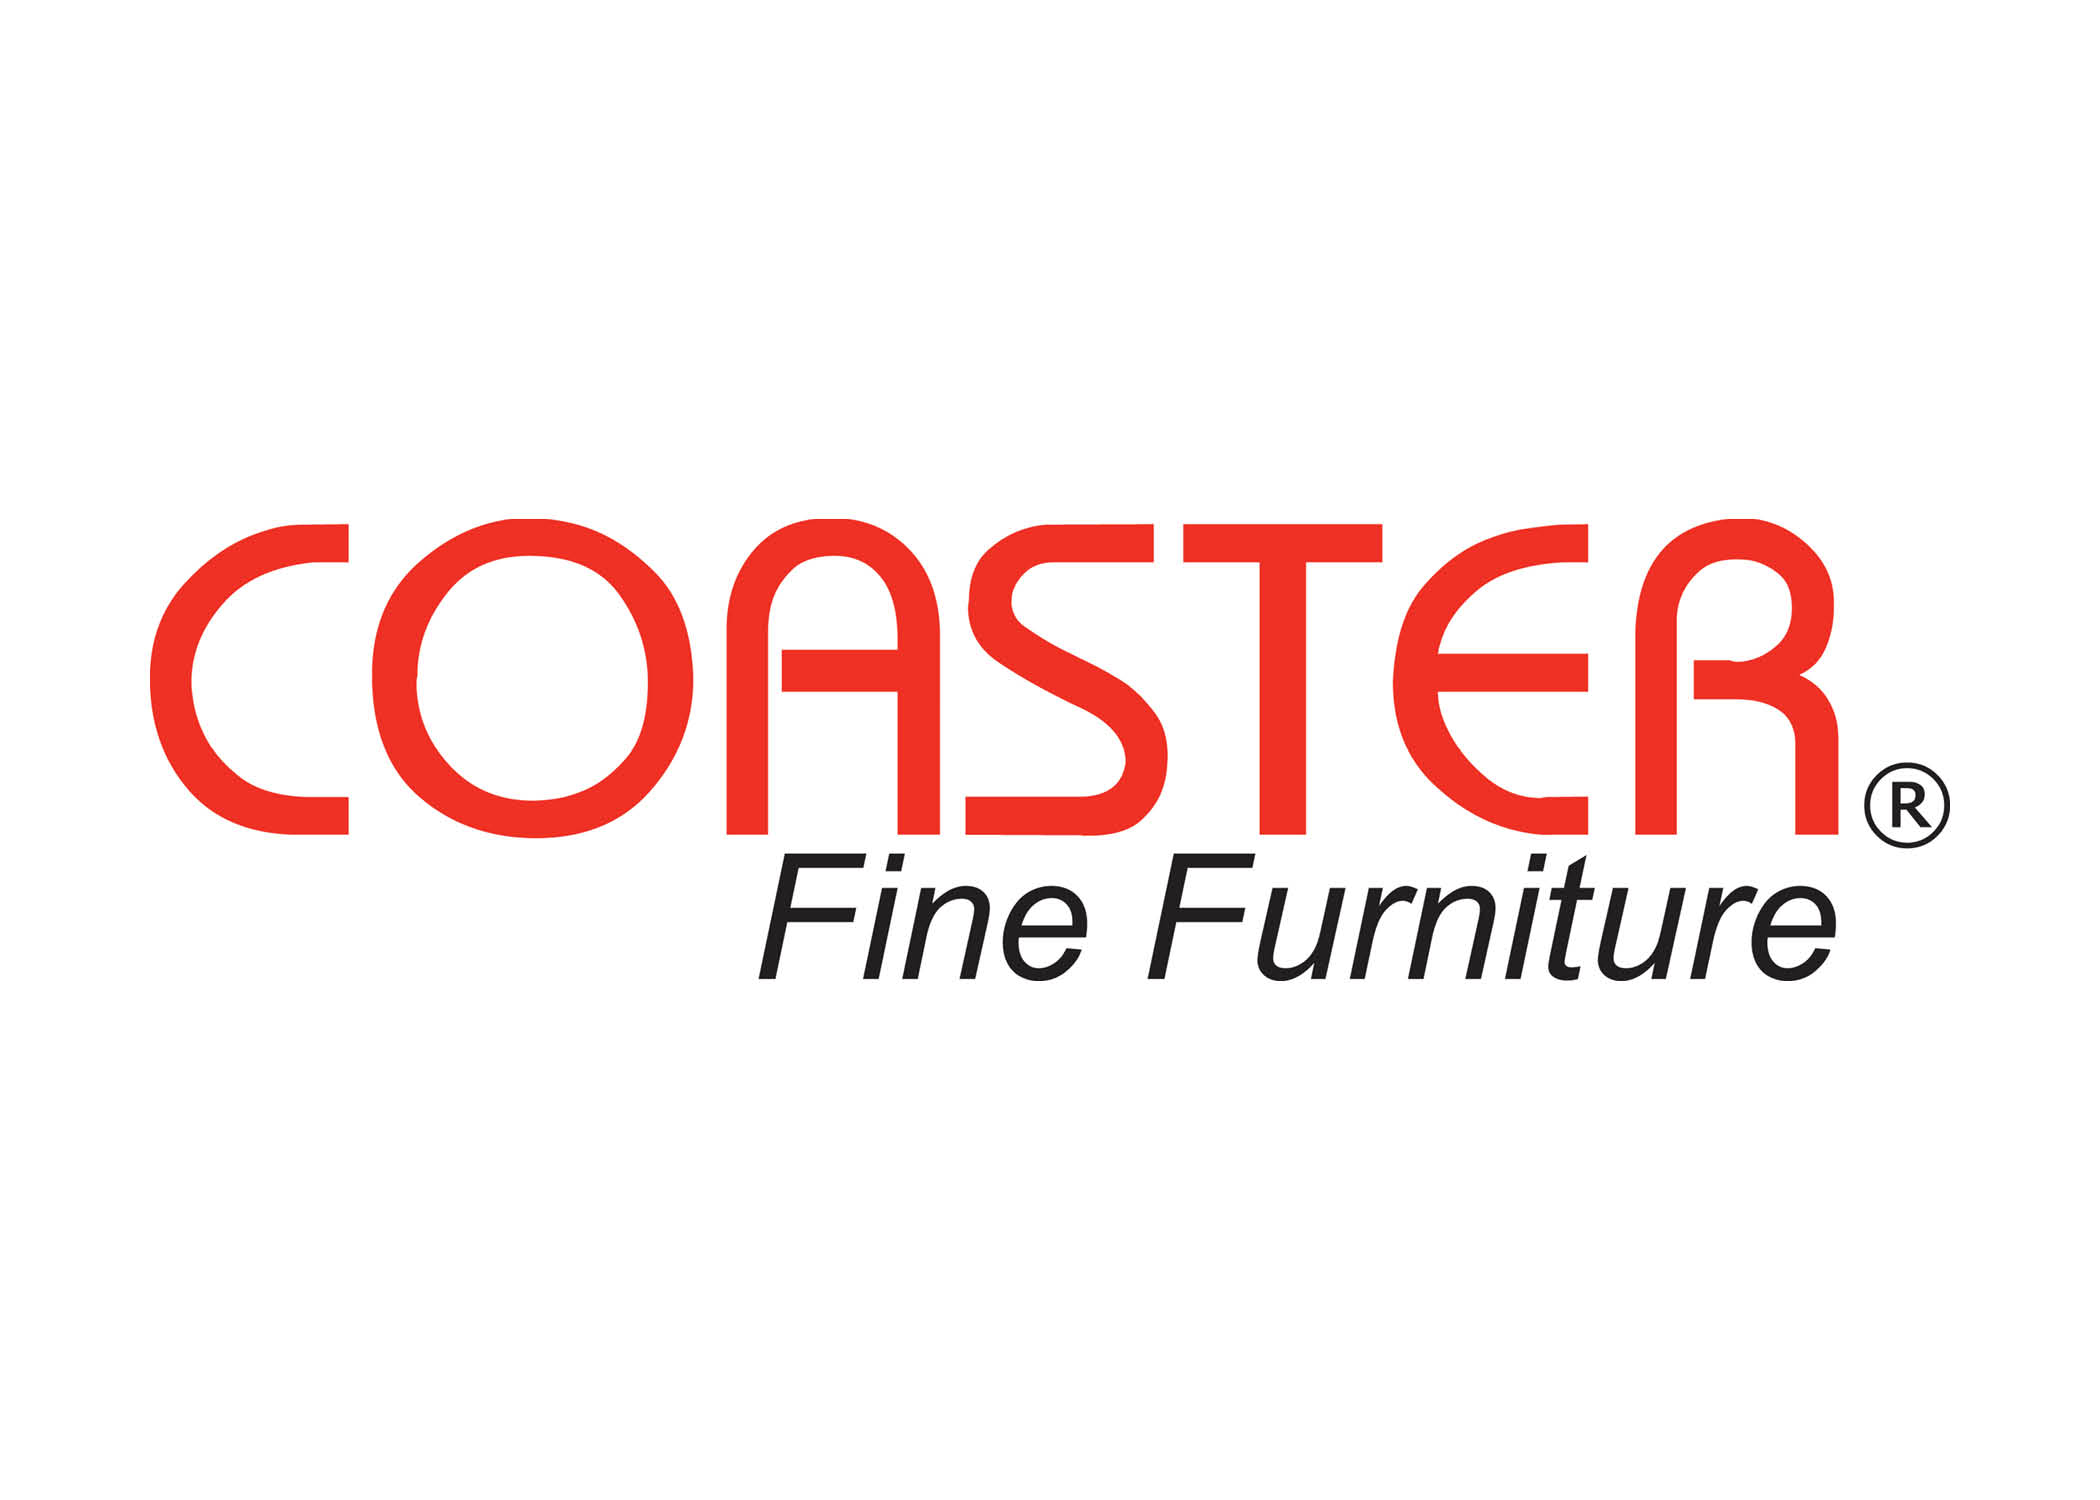 Who Are Coaster Furniture Competitors?